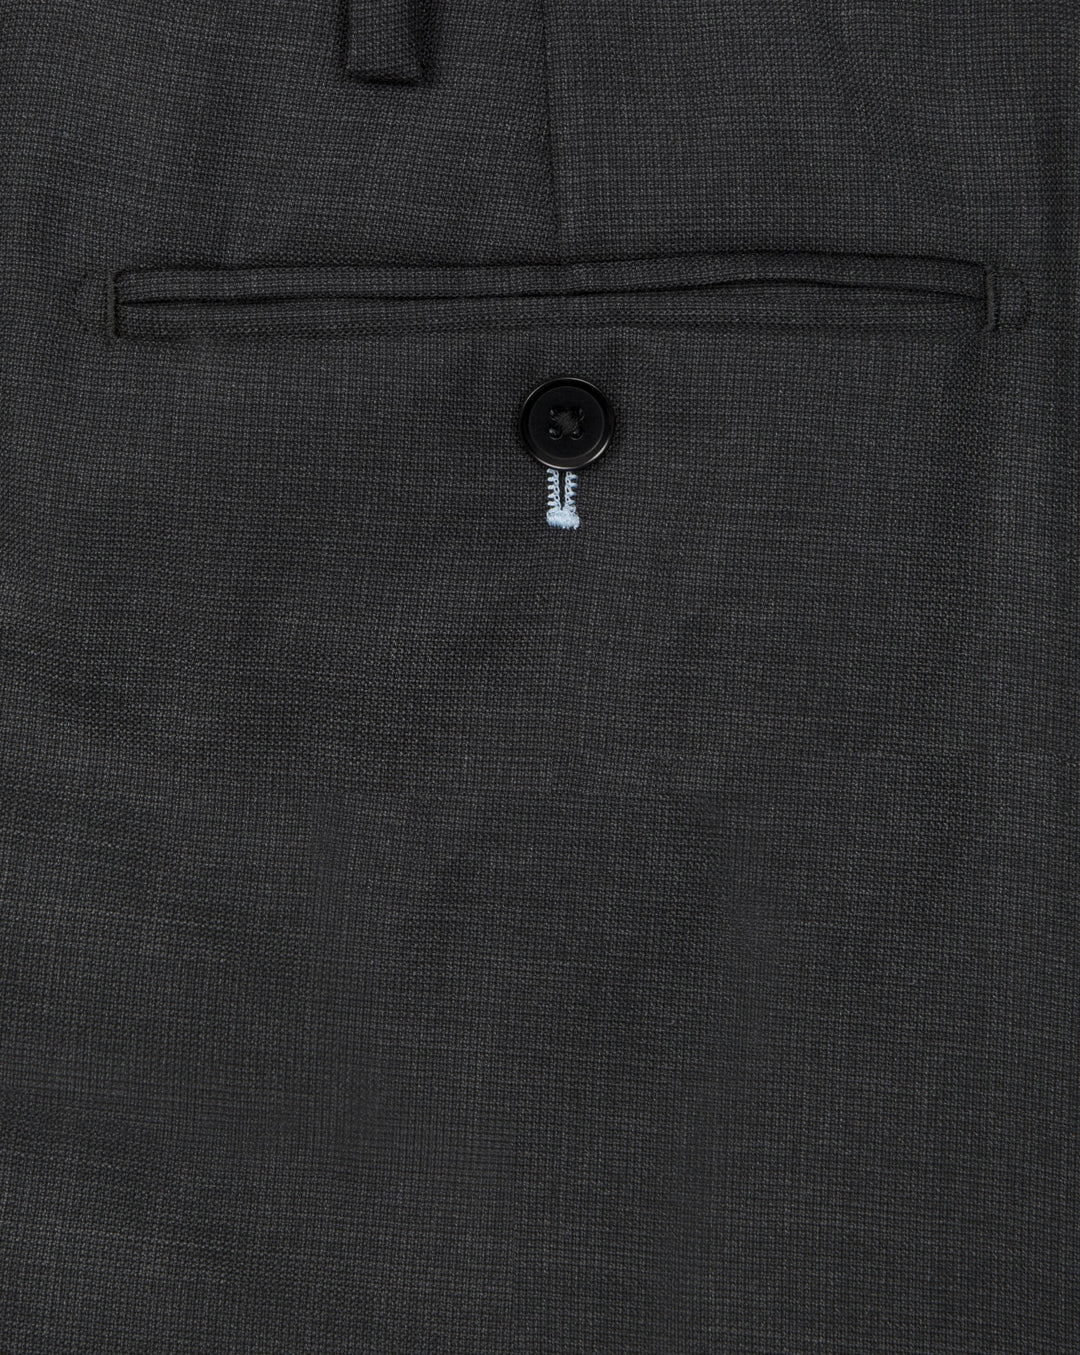 Dark Grey Nailshead Suit - Mark marengo